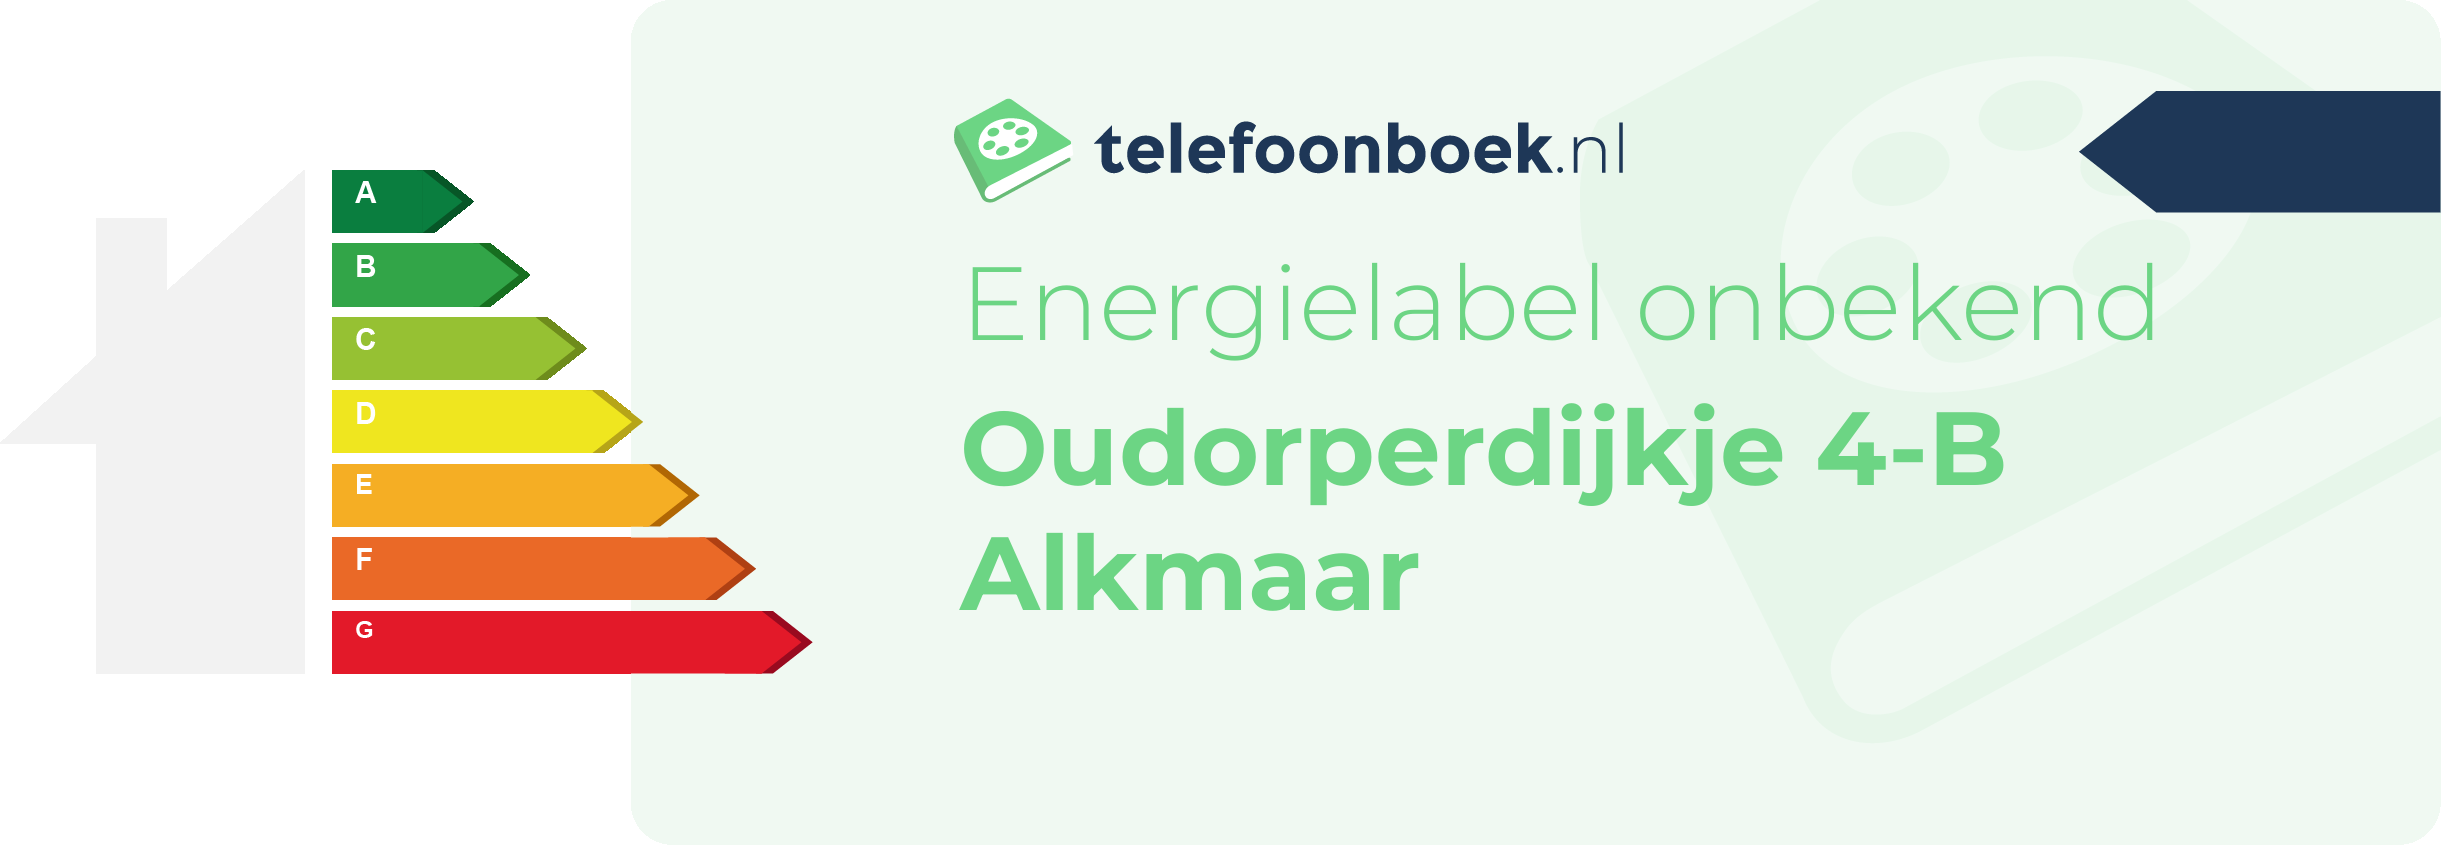 Energielabel Oudorperdijkje 4-B Alkmaar